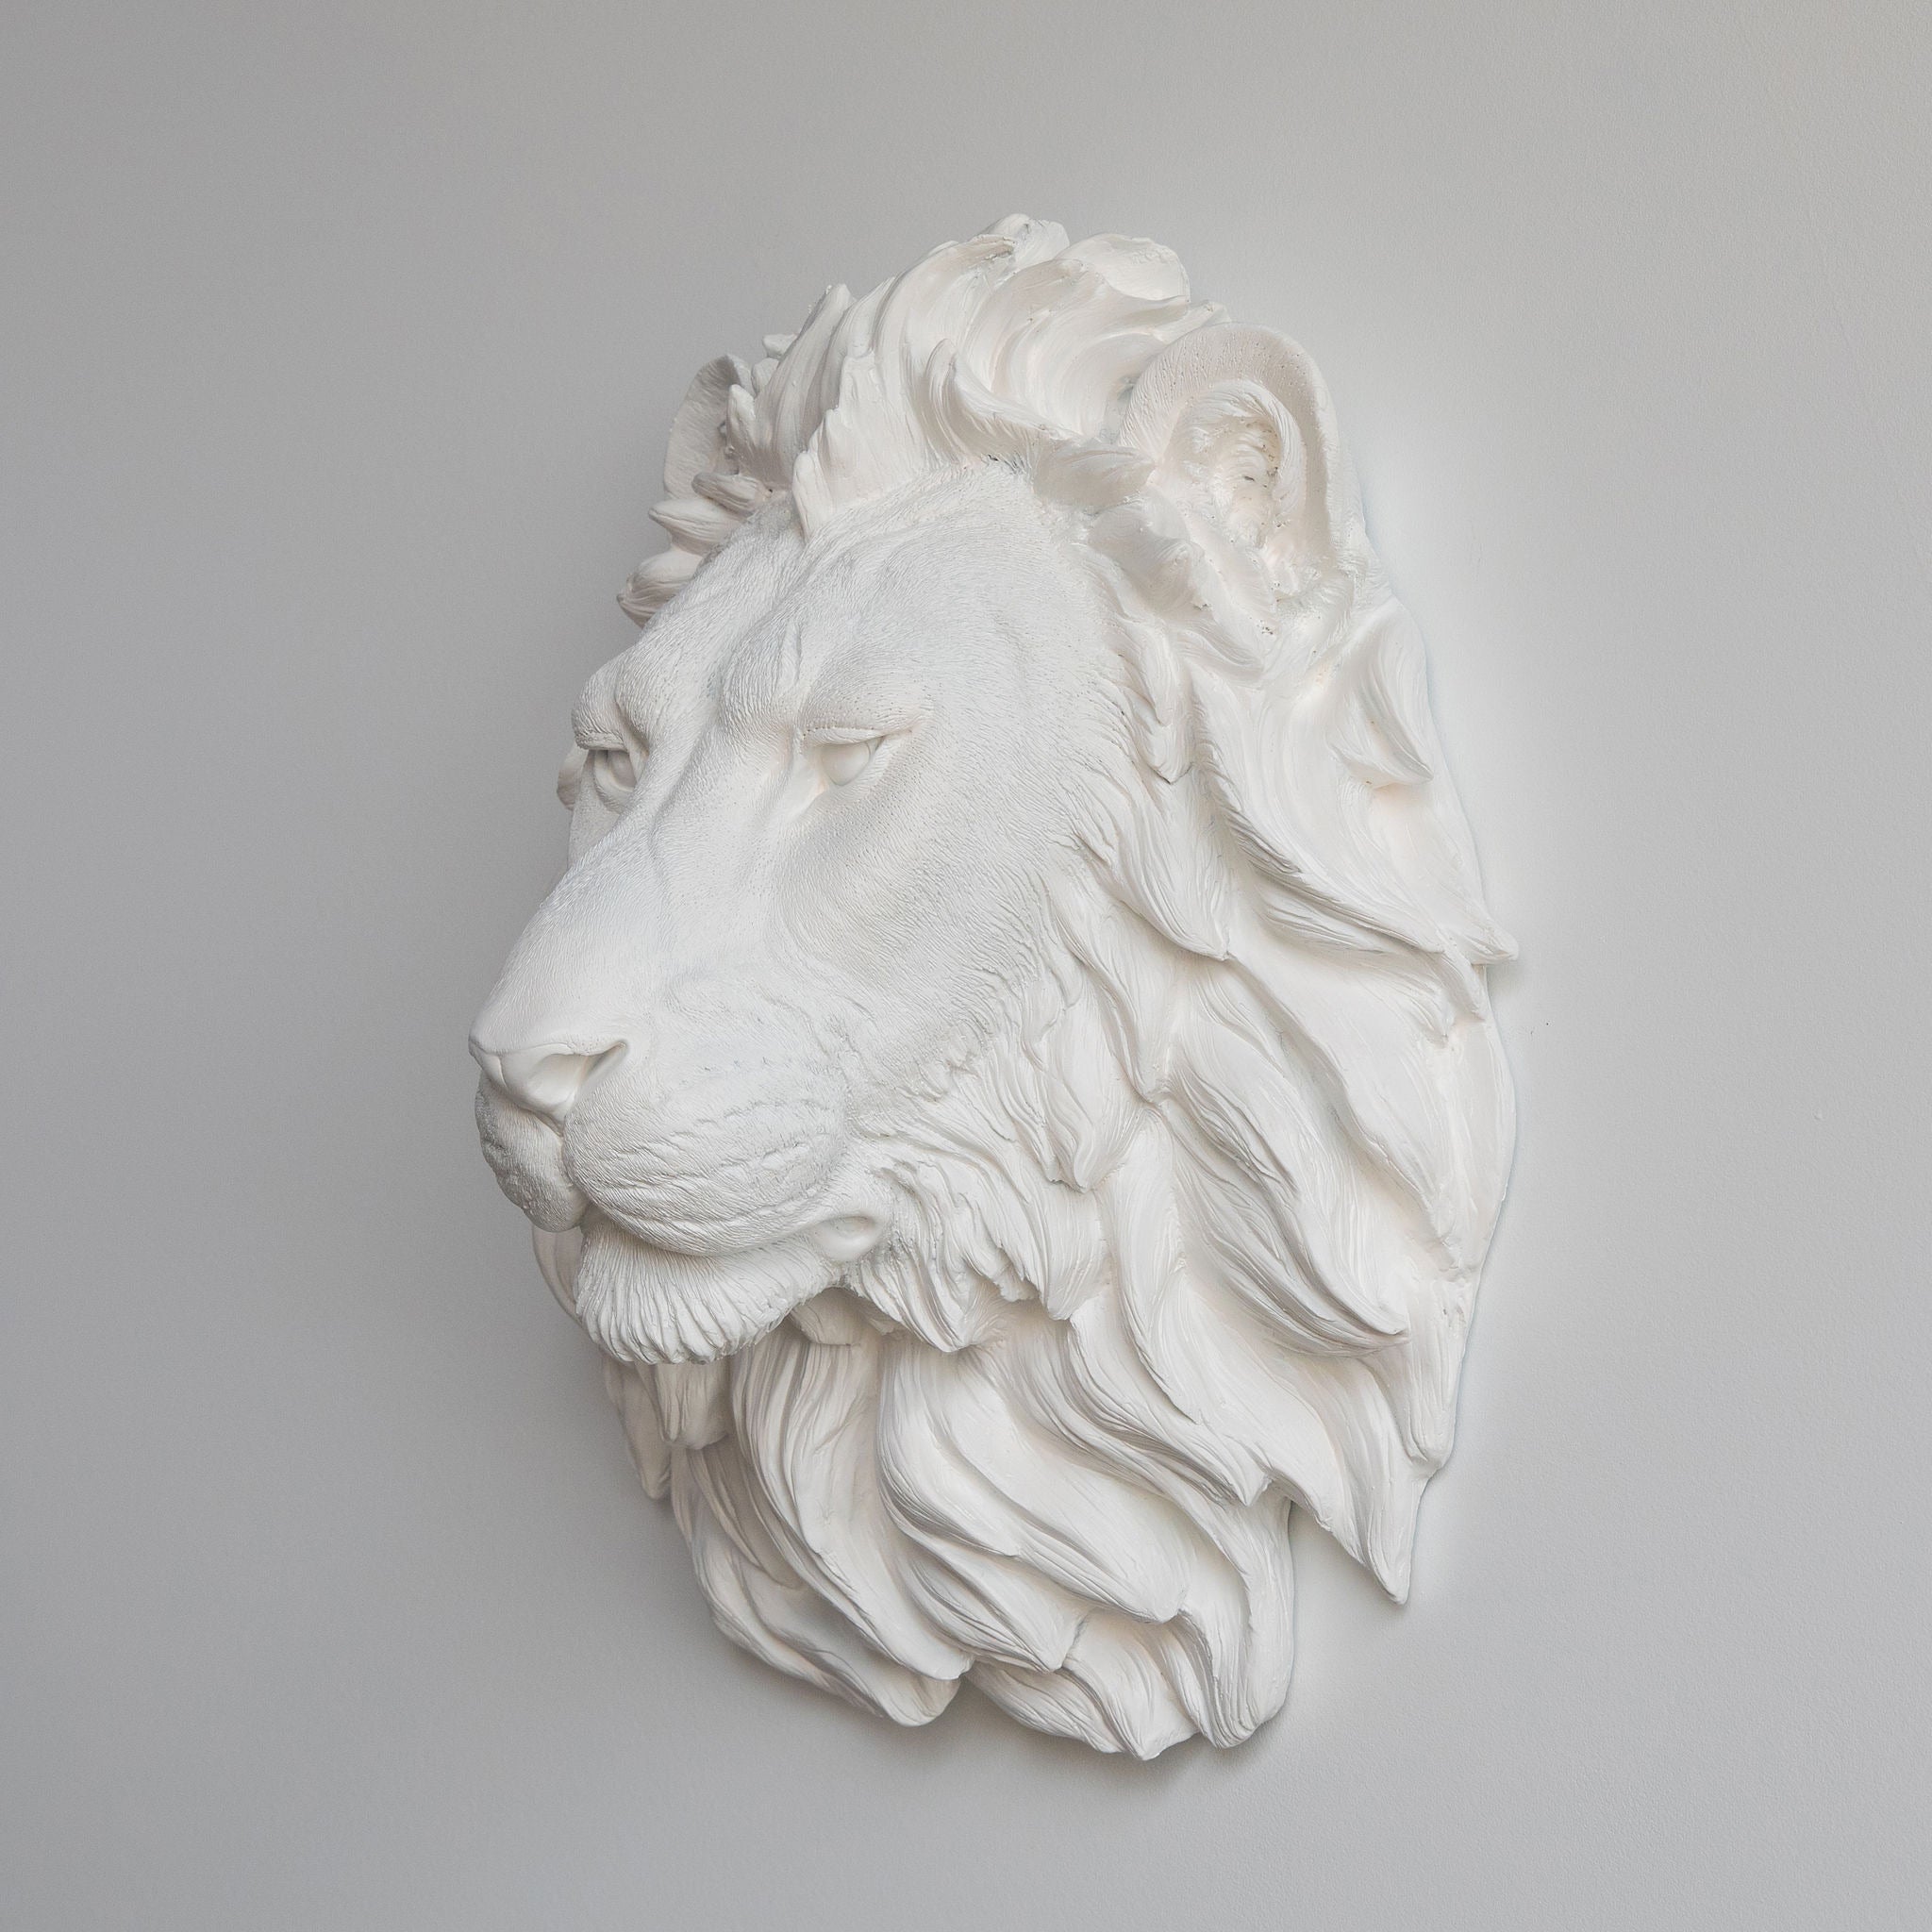 Faux Lion Head Wall Mount // White